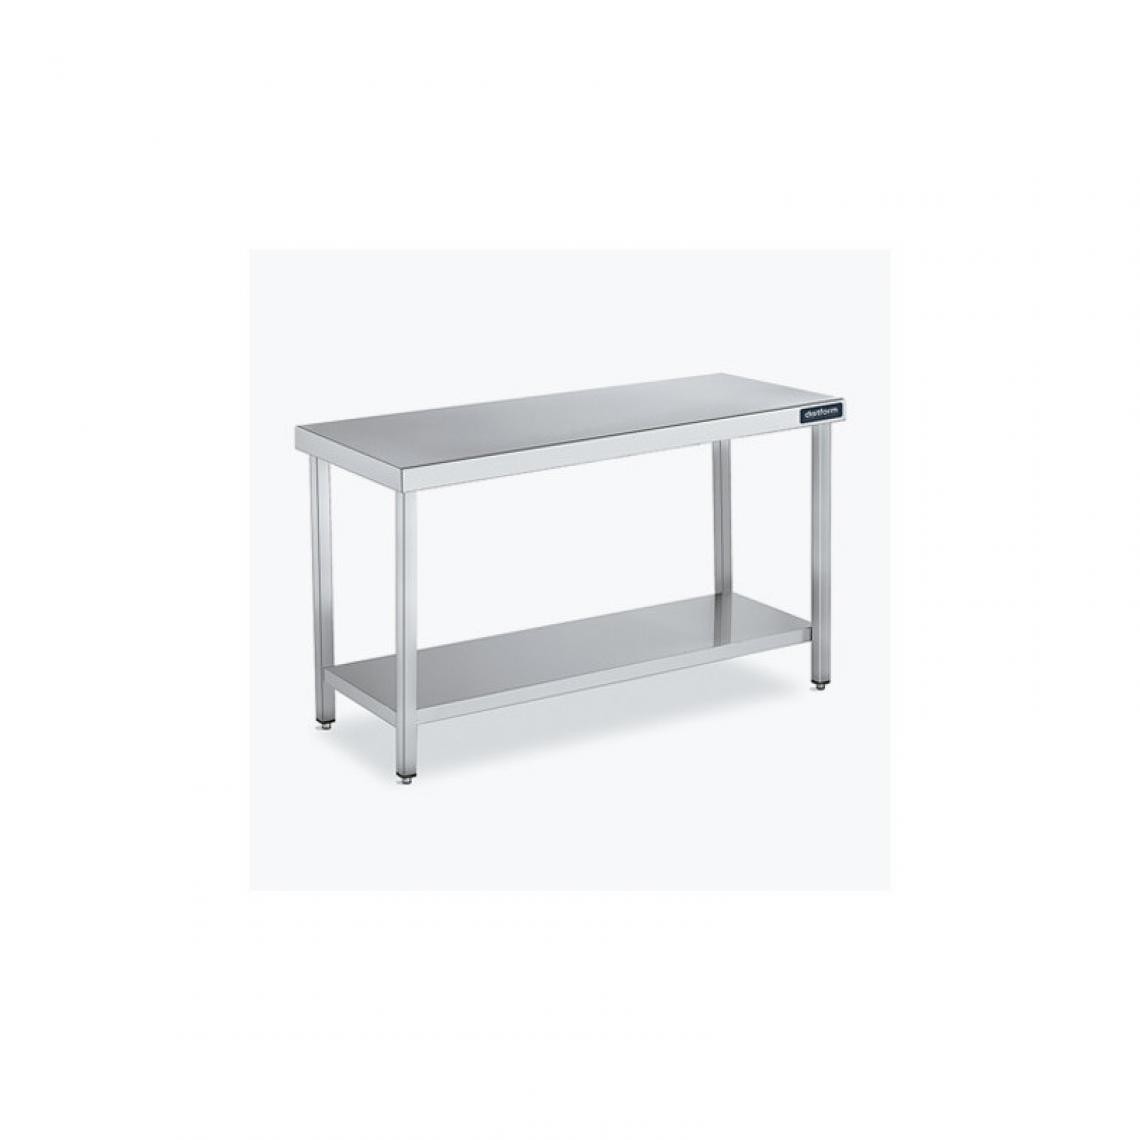 DISTFORM - Table Centrale 600x900 avec Étagère - Distform - Inox 18/10900x900x850mm - Tables à manger